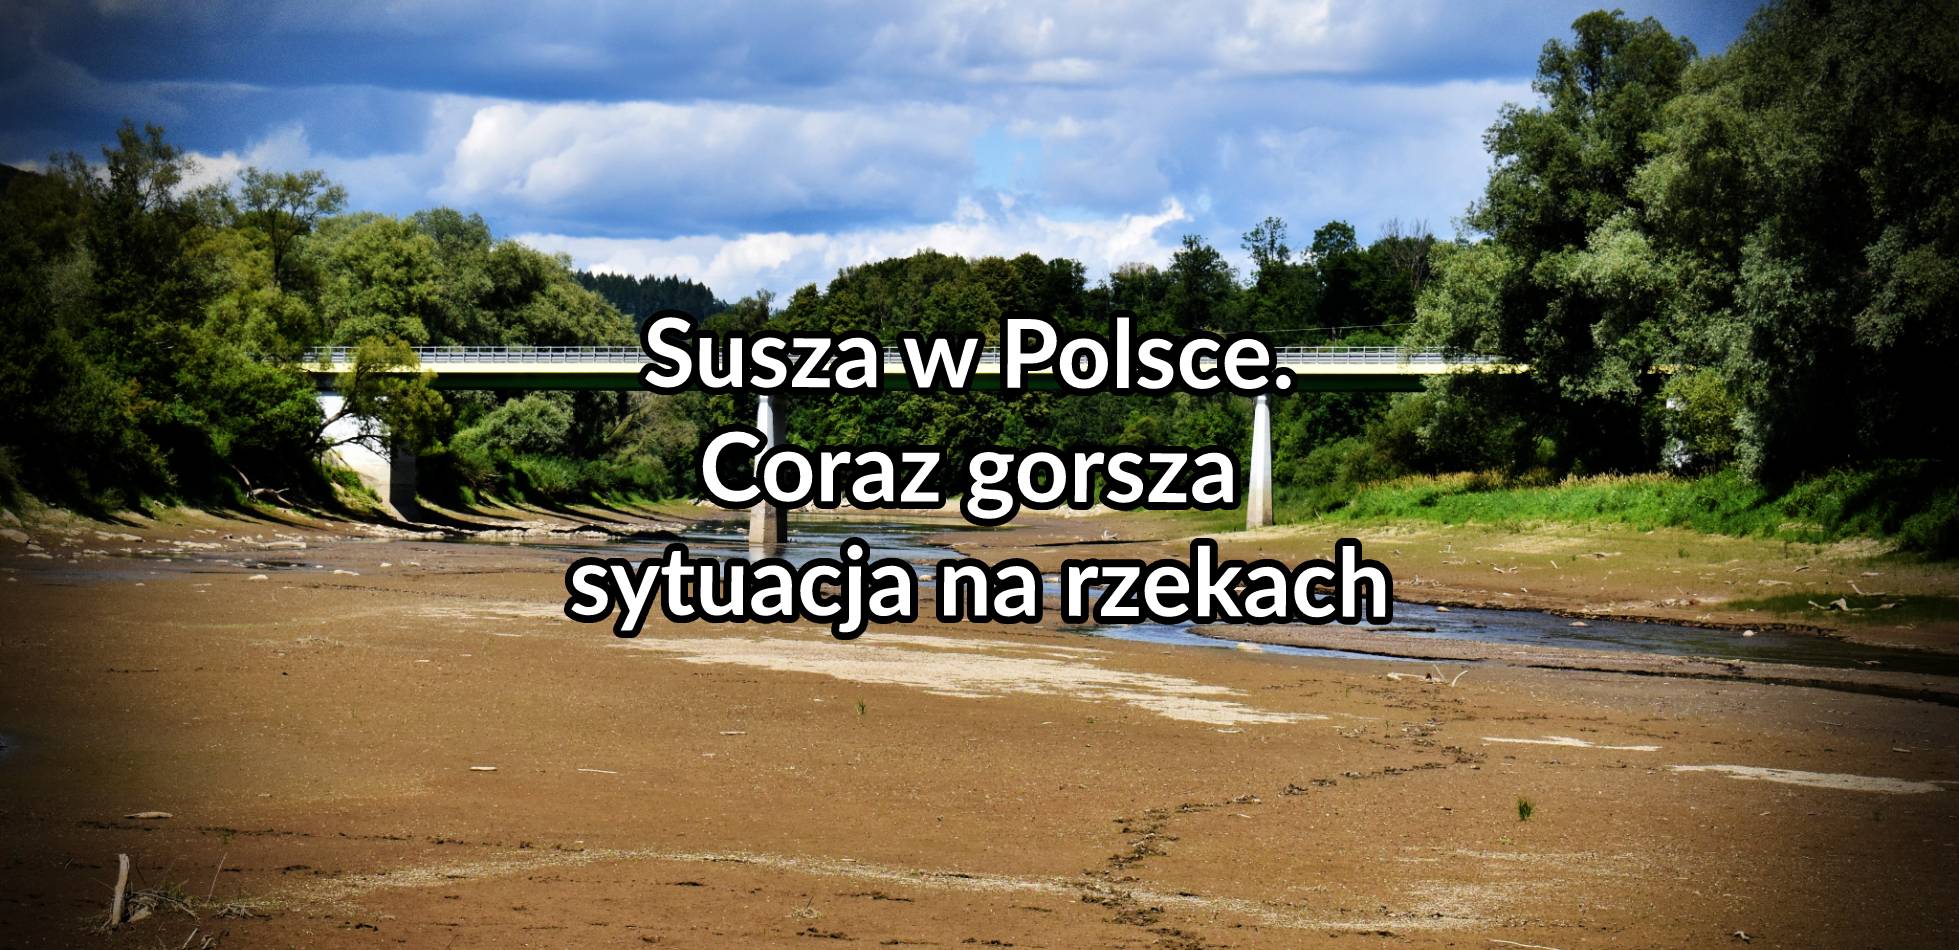 Susza w Polsce. Coraz gorsza sytuacja na rzekach